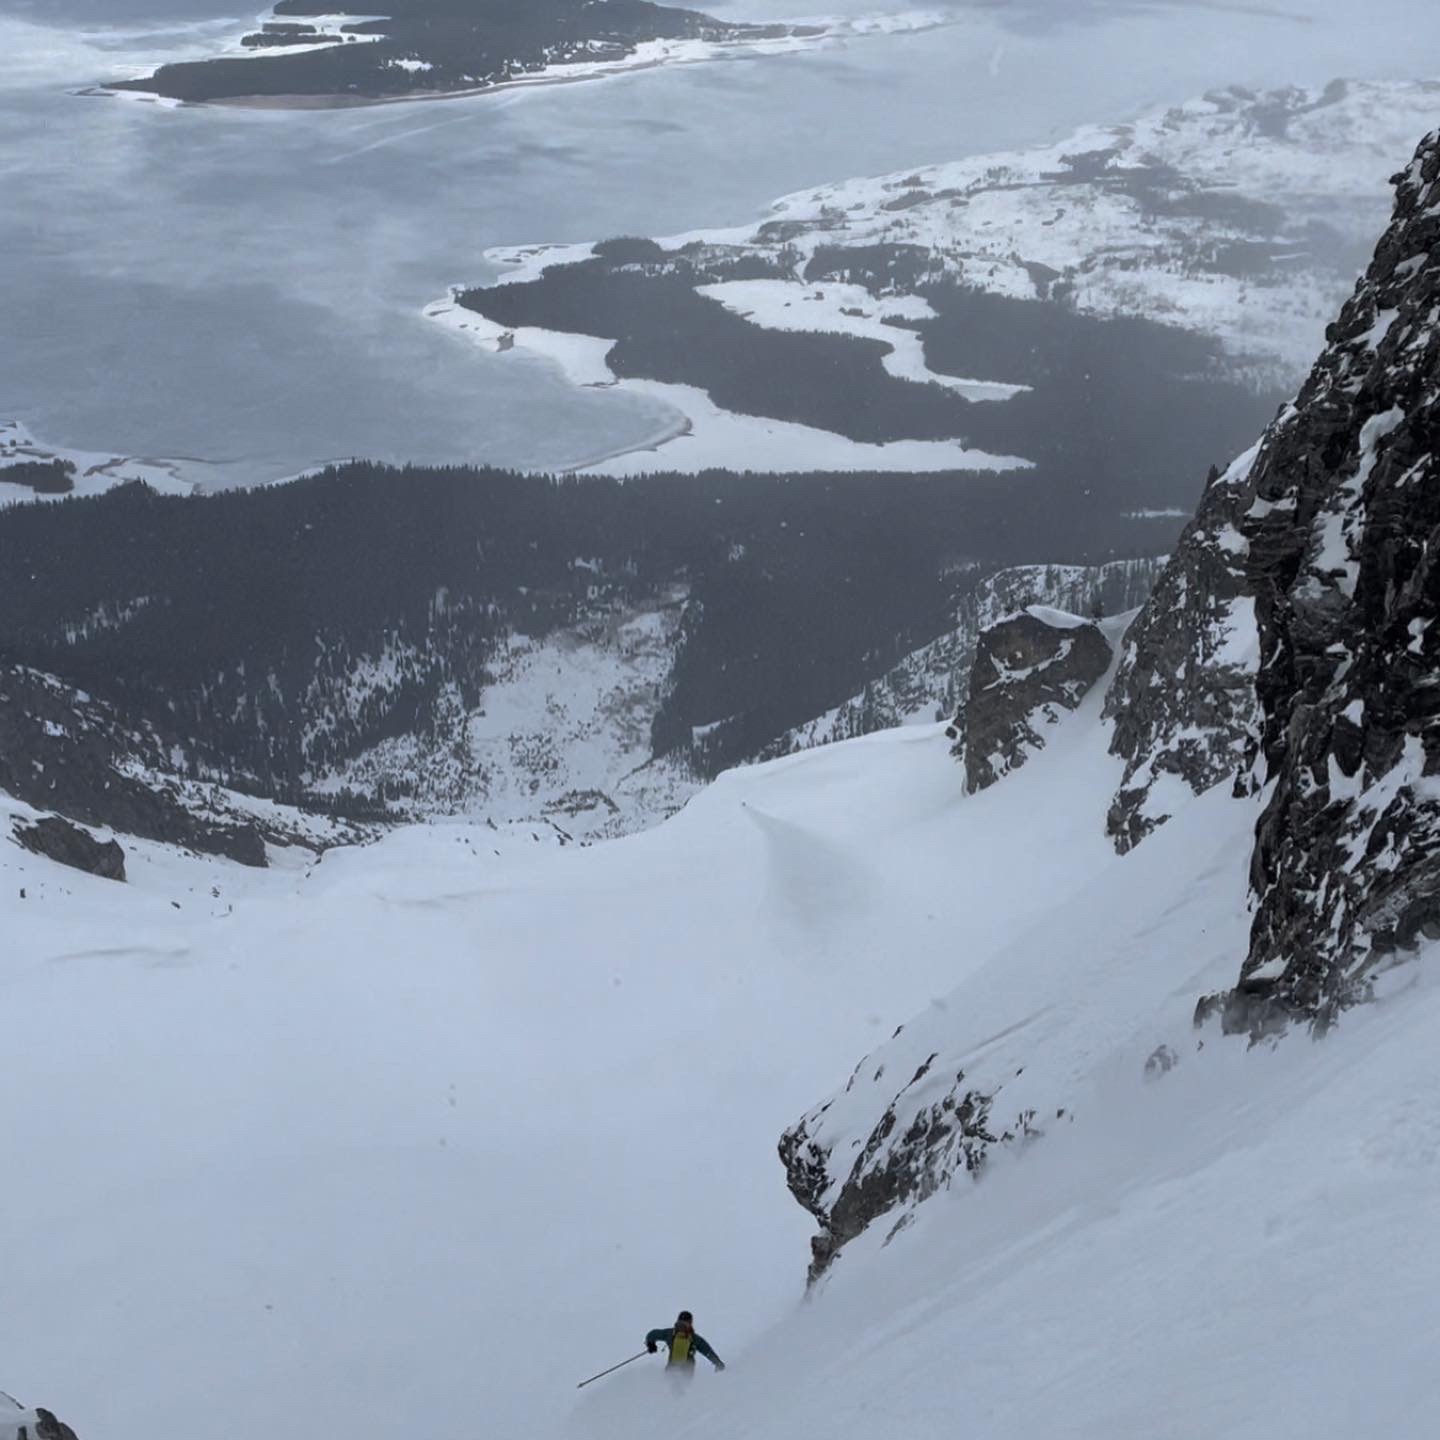 Part II: Mt. Moran's Skillet Ski Descent – Trip Report